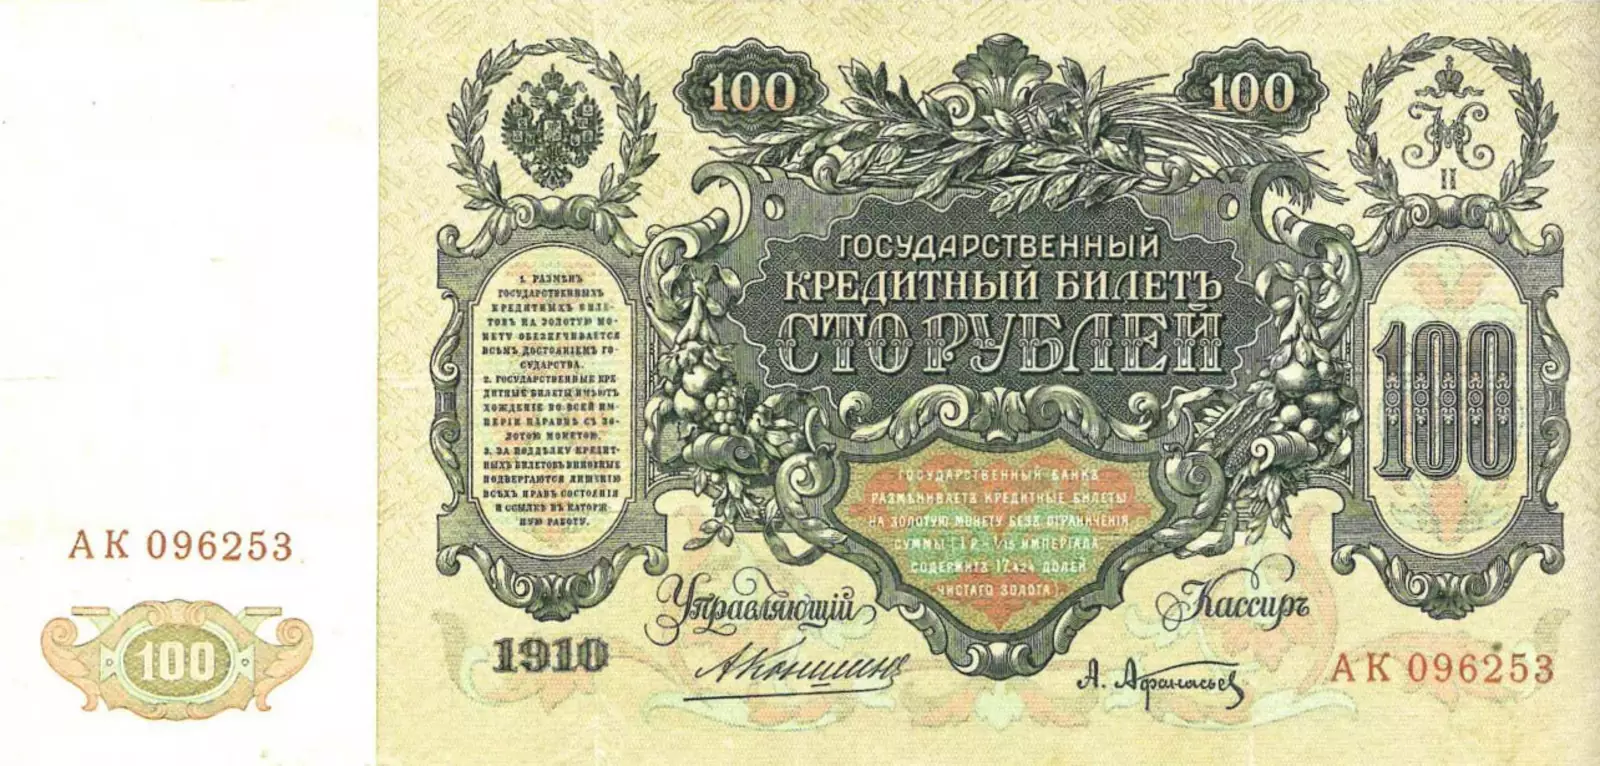 «Катенька» — 100 рублей образца 1910 года, оборотная сторона.Из коллекции Ф. Ф. Иванкина